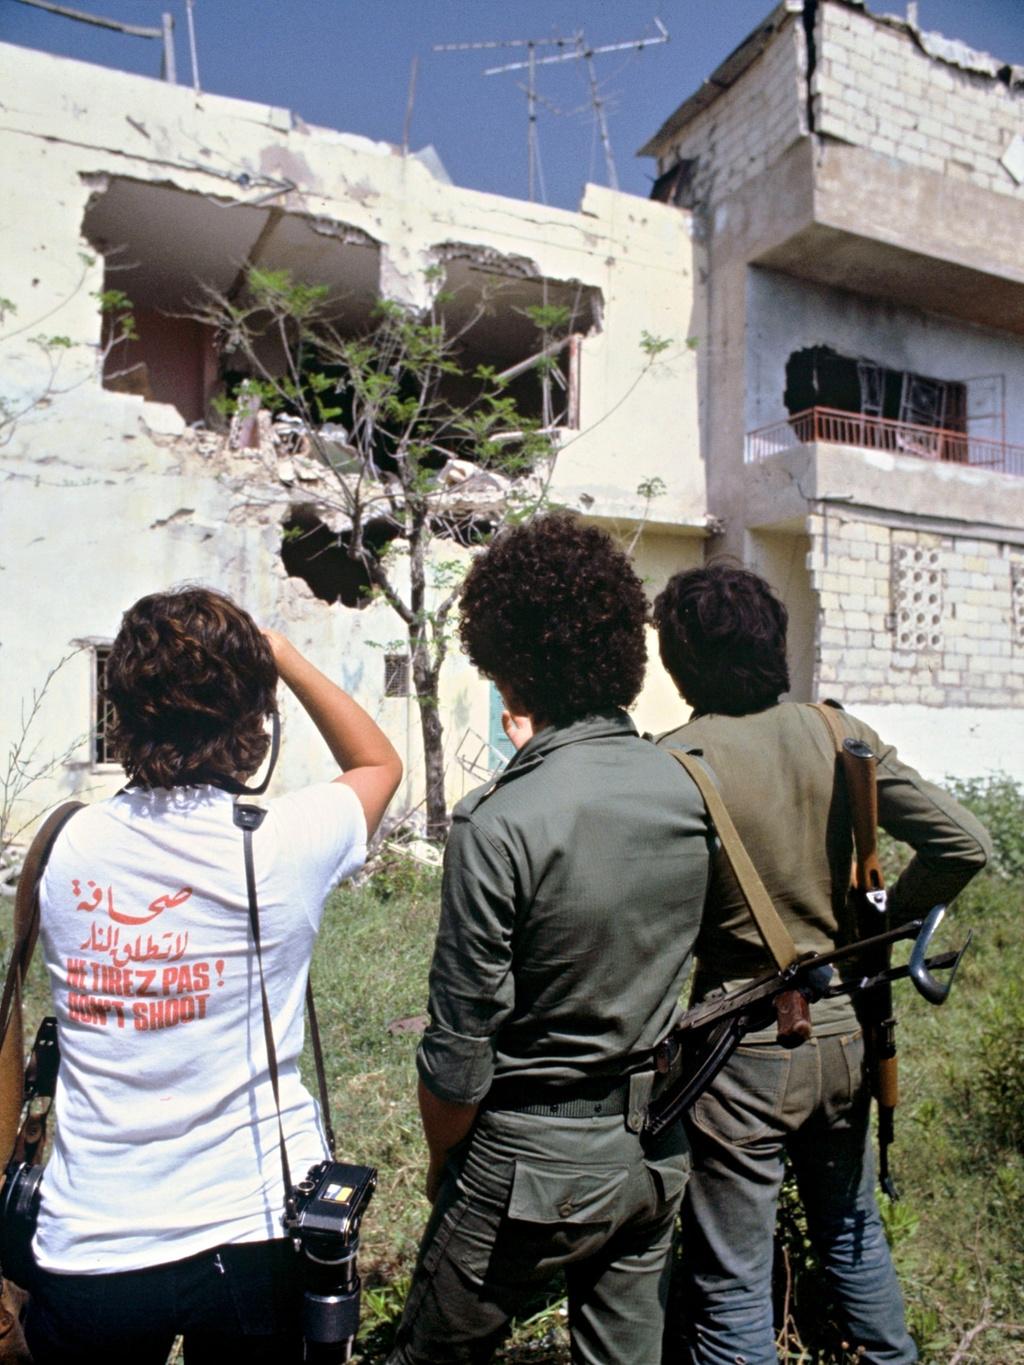 Europese journalisten droegen het 'niet-schieten'-shirt in 1982 tijdens de Israëlisch-Libanese Oorlog